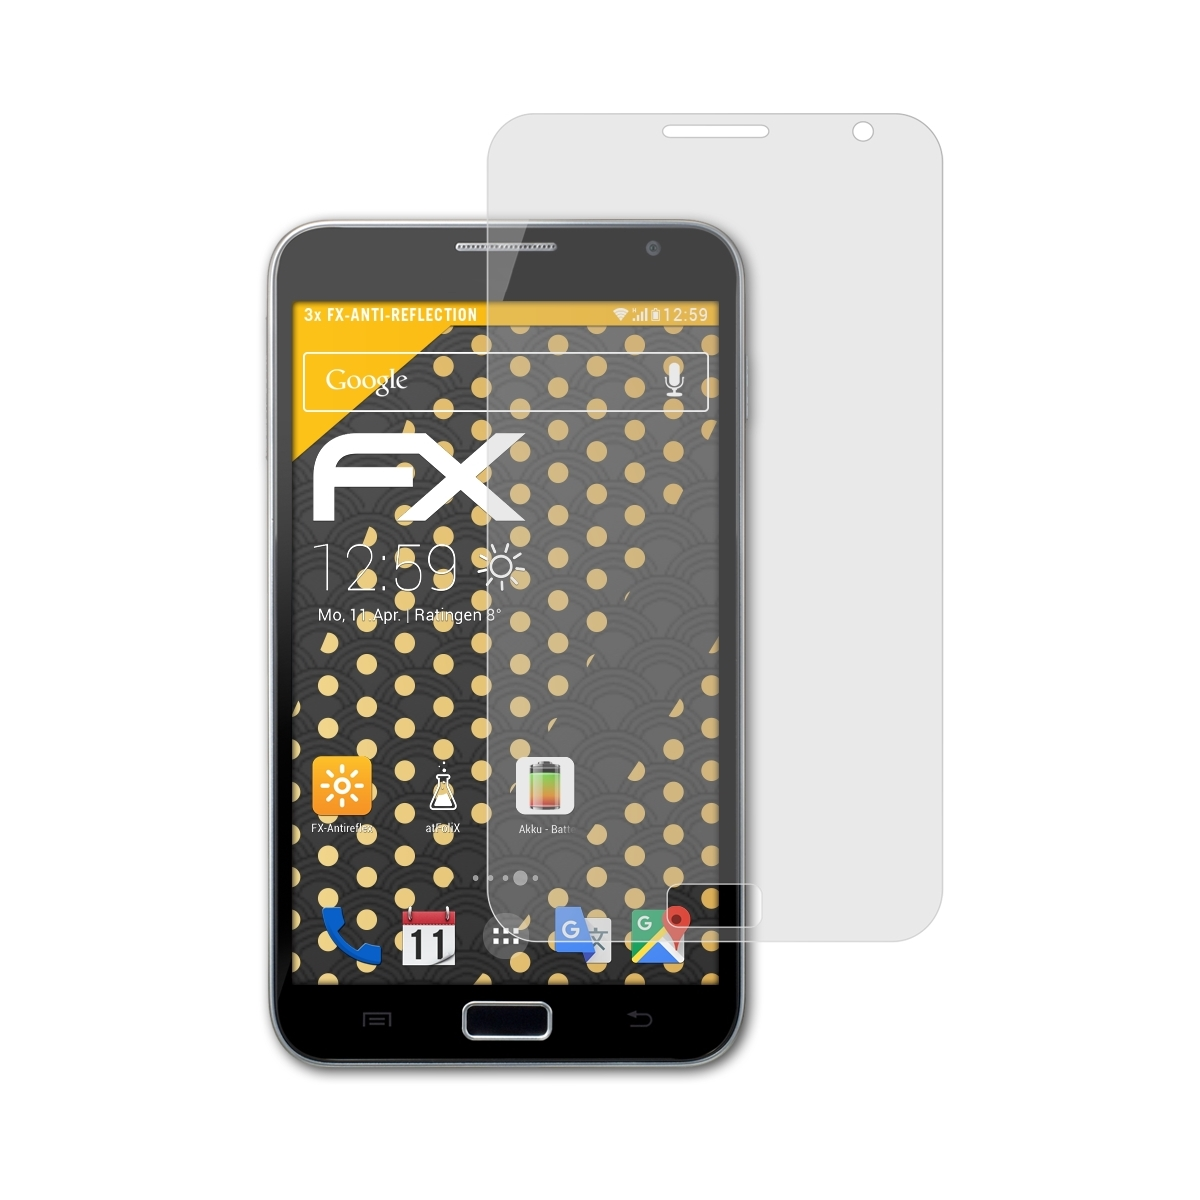 Displayschutz(für FX-Antireflex ATFOLIX 3x Note Galaxy (GT-N7000)) Samsung